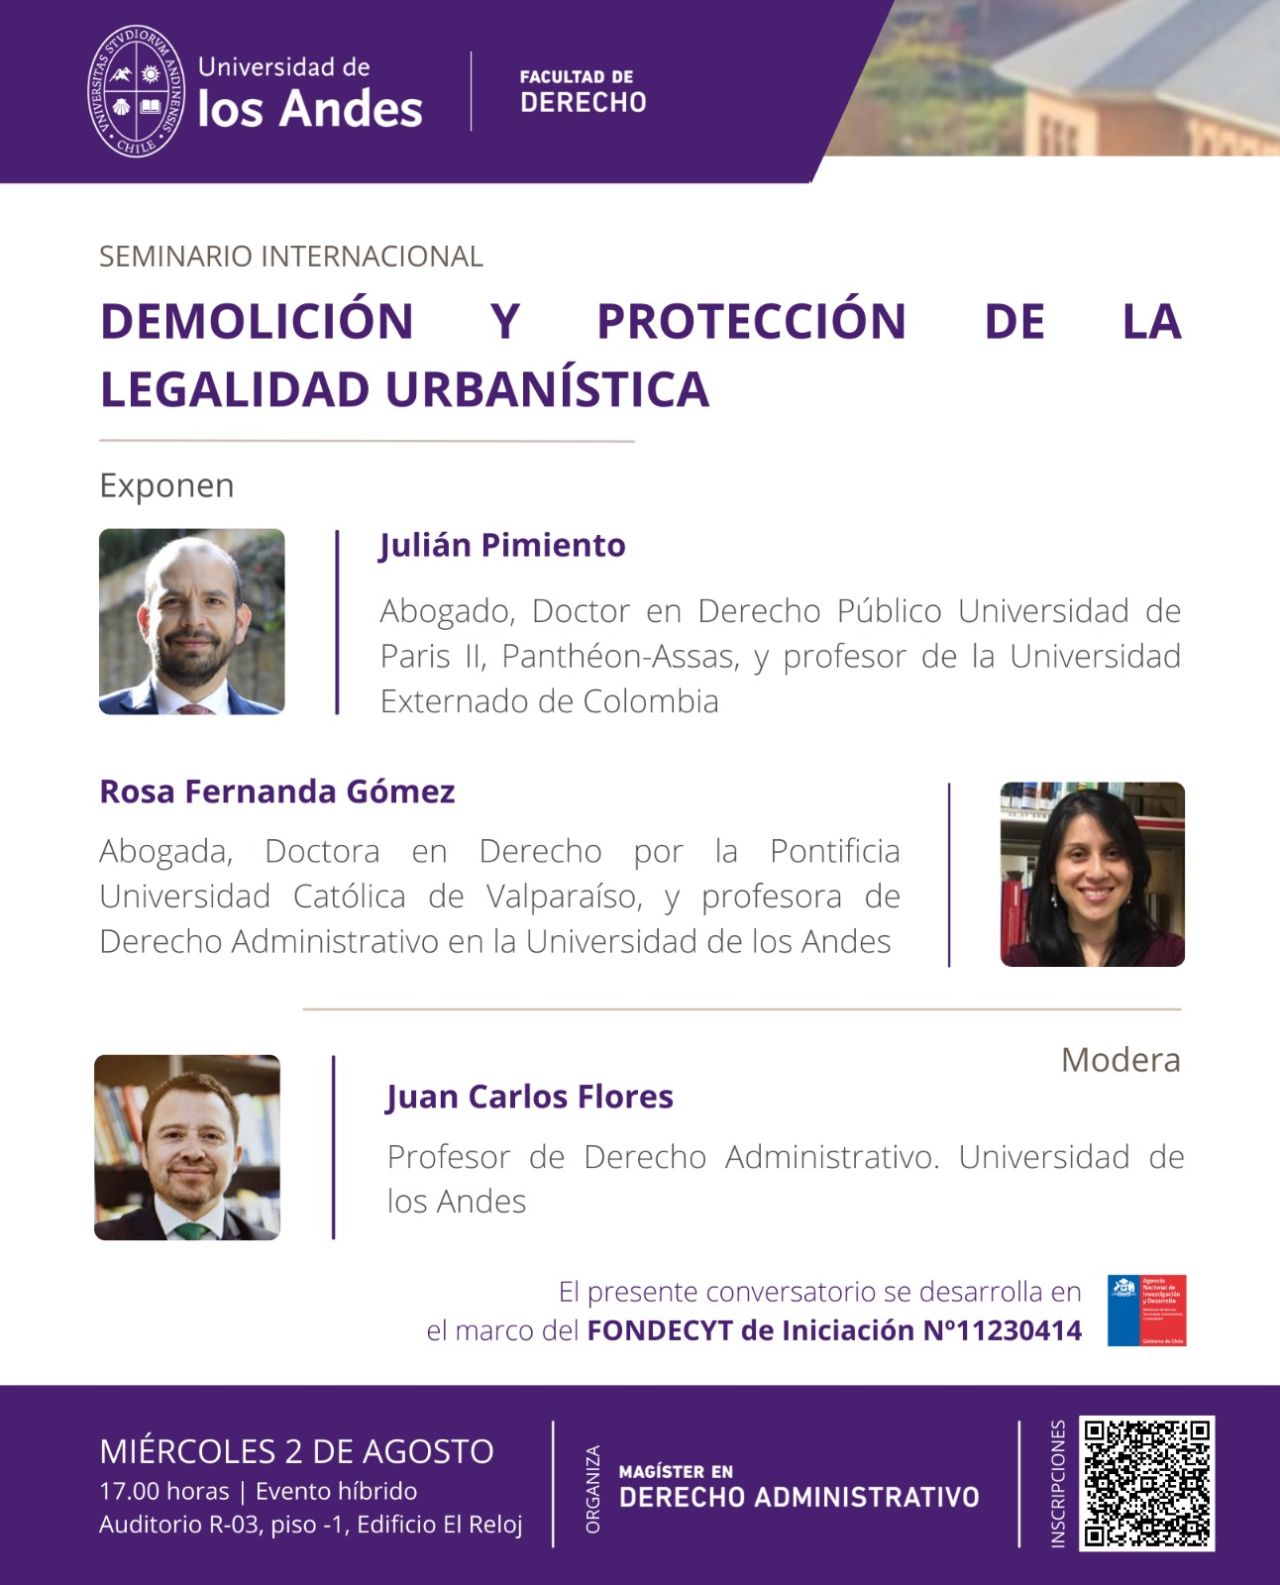 🏗️ Seminario Internacional: “Demolición y protección de la legalidad urbanística” en la Universidad de los Andes (CL)